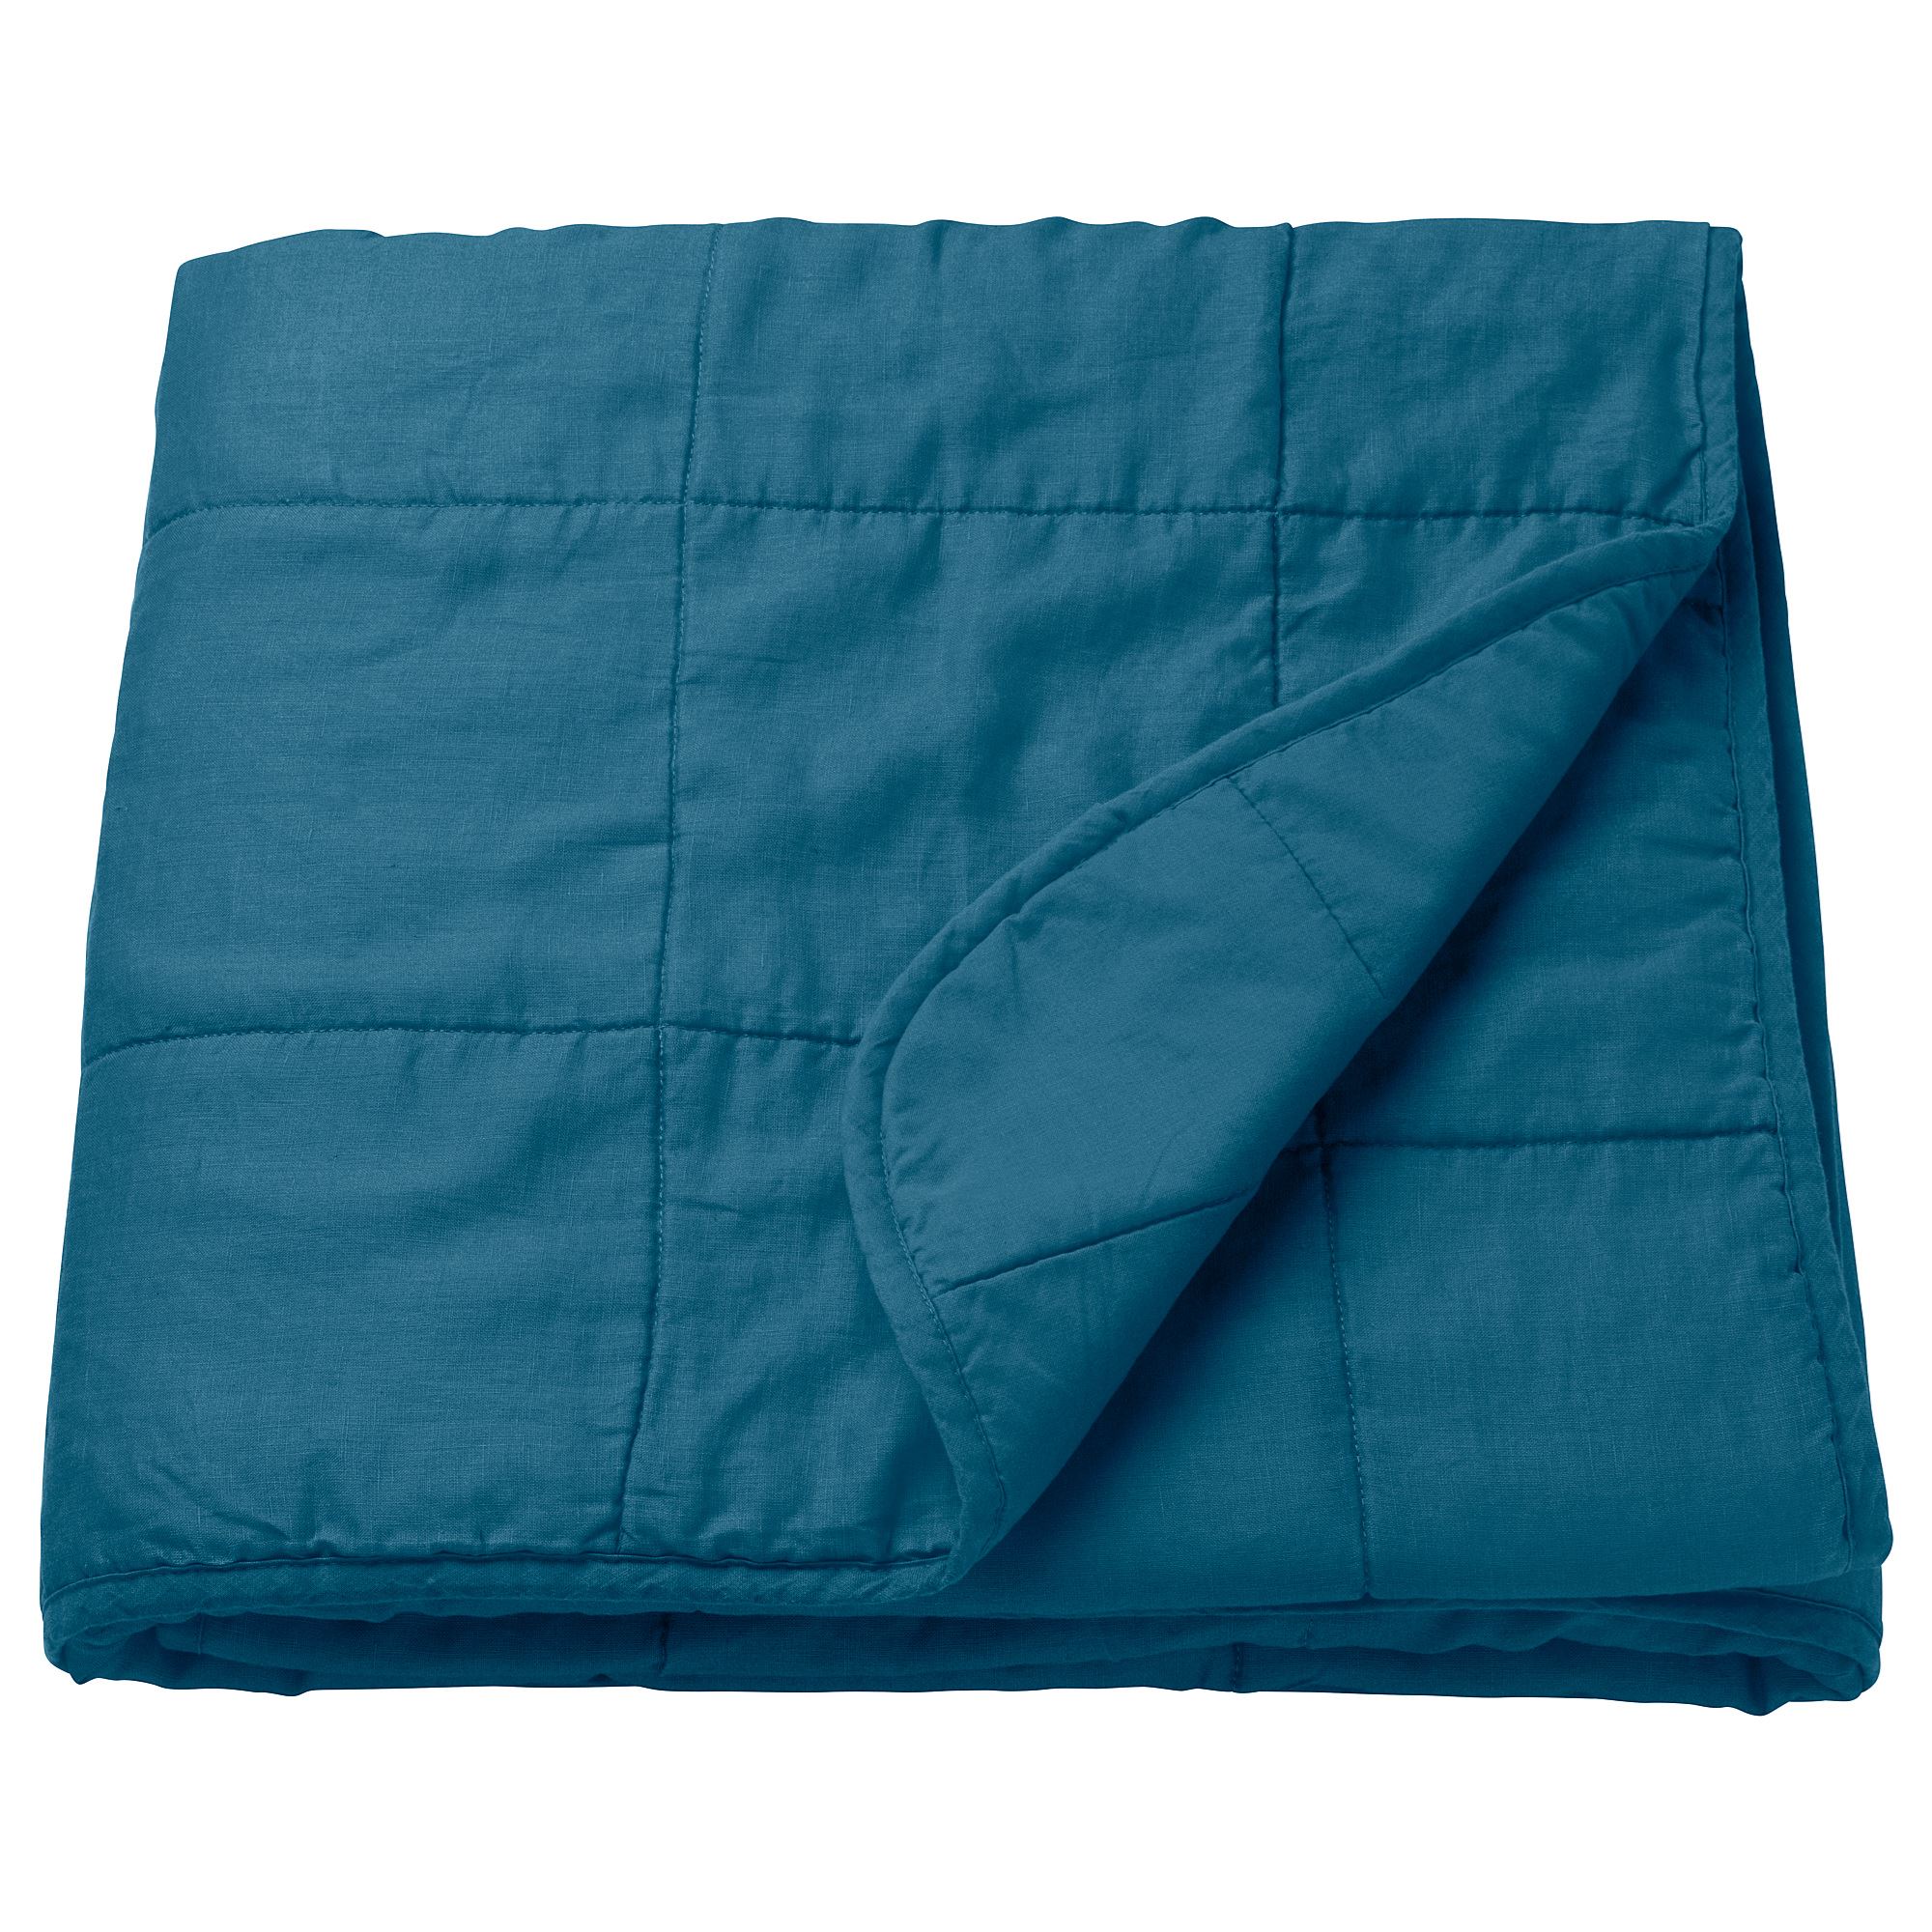 GULVED çift kişilik yatak örtüsü koyu mavi 260x250 cm IKEA Ev Tekstili